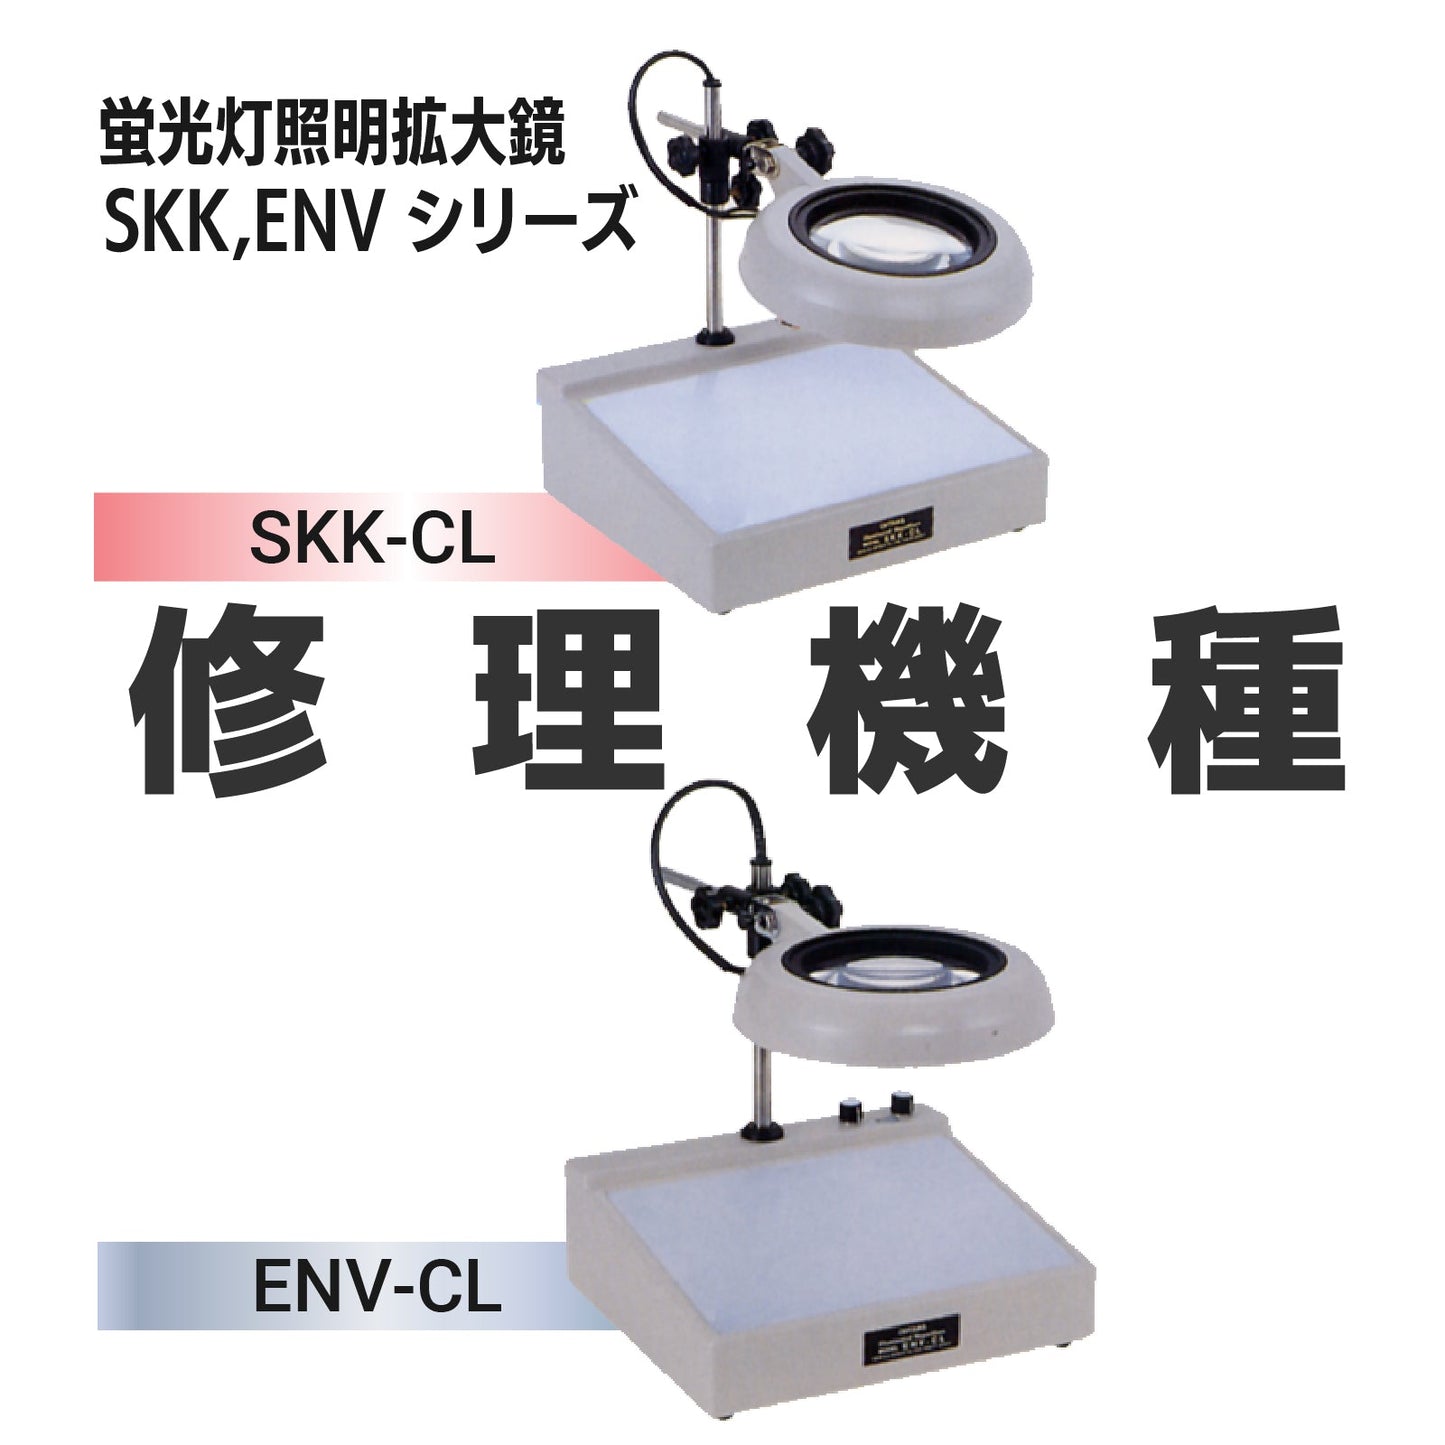 SKK series/ENV series: SKK-CL,ENV-CL